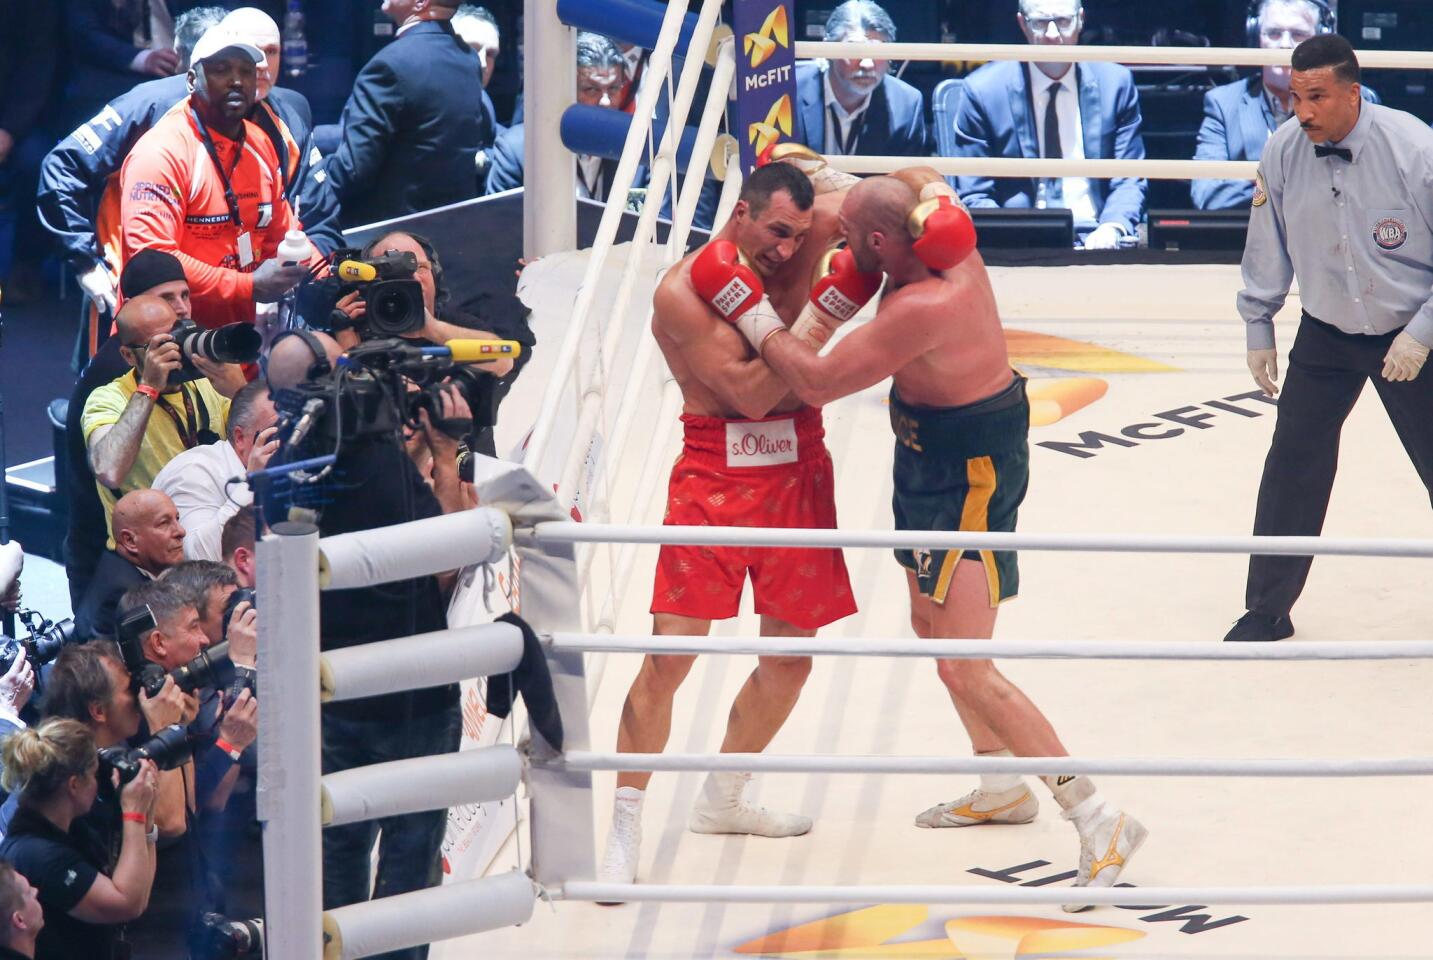 Vladimir Klitschko vs Tyson Fury